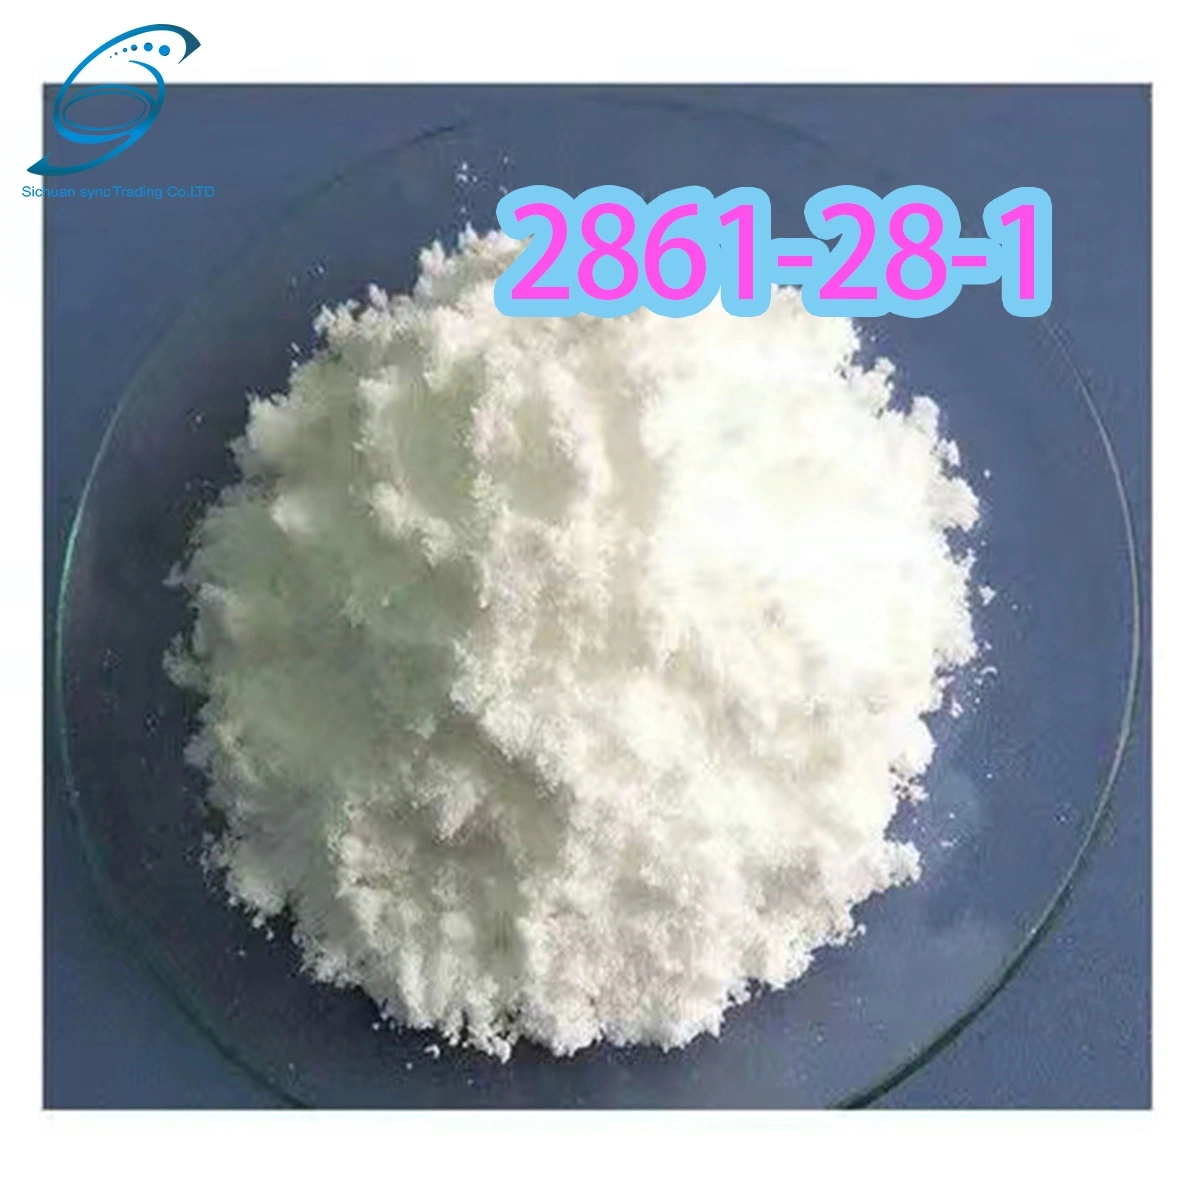 الجودة العالية 2- (1، 3-benzoidioxol-5-yl) CAS 2861-28-1/حمض الخل ODM الصيدلاني الوسيط BMK PMK إمداد المصنع الصيني (1، 3-Bennzodioxol-5-yl